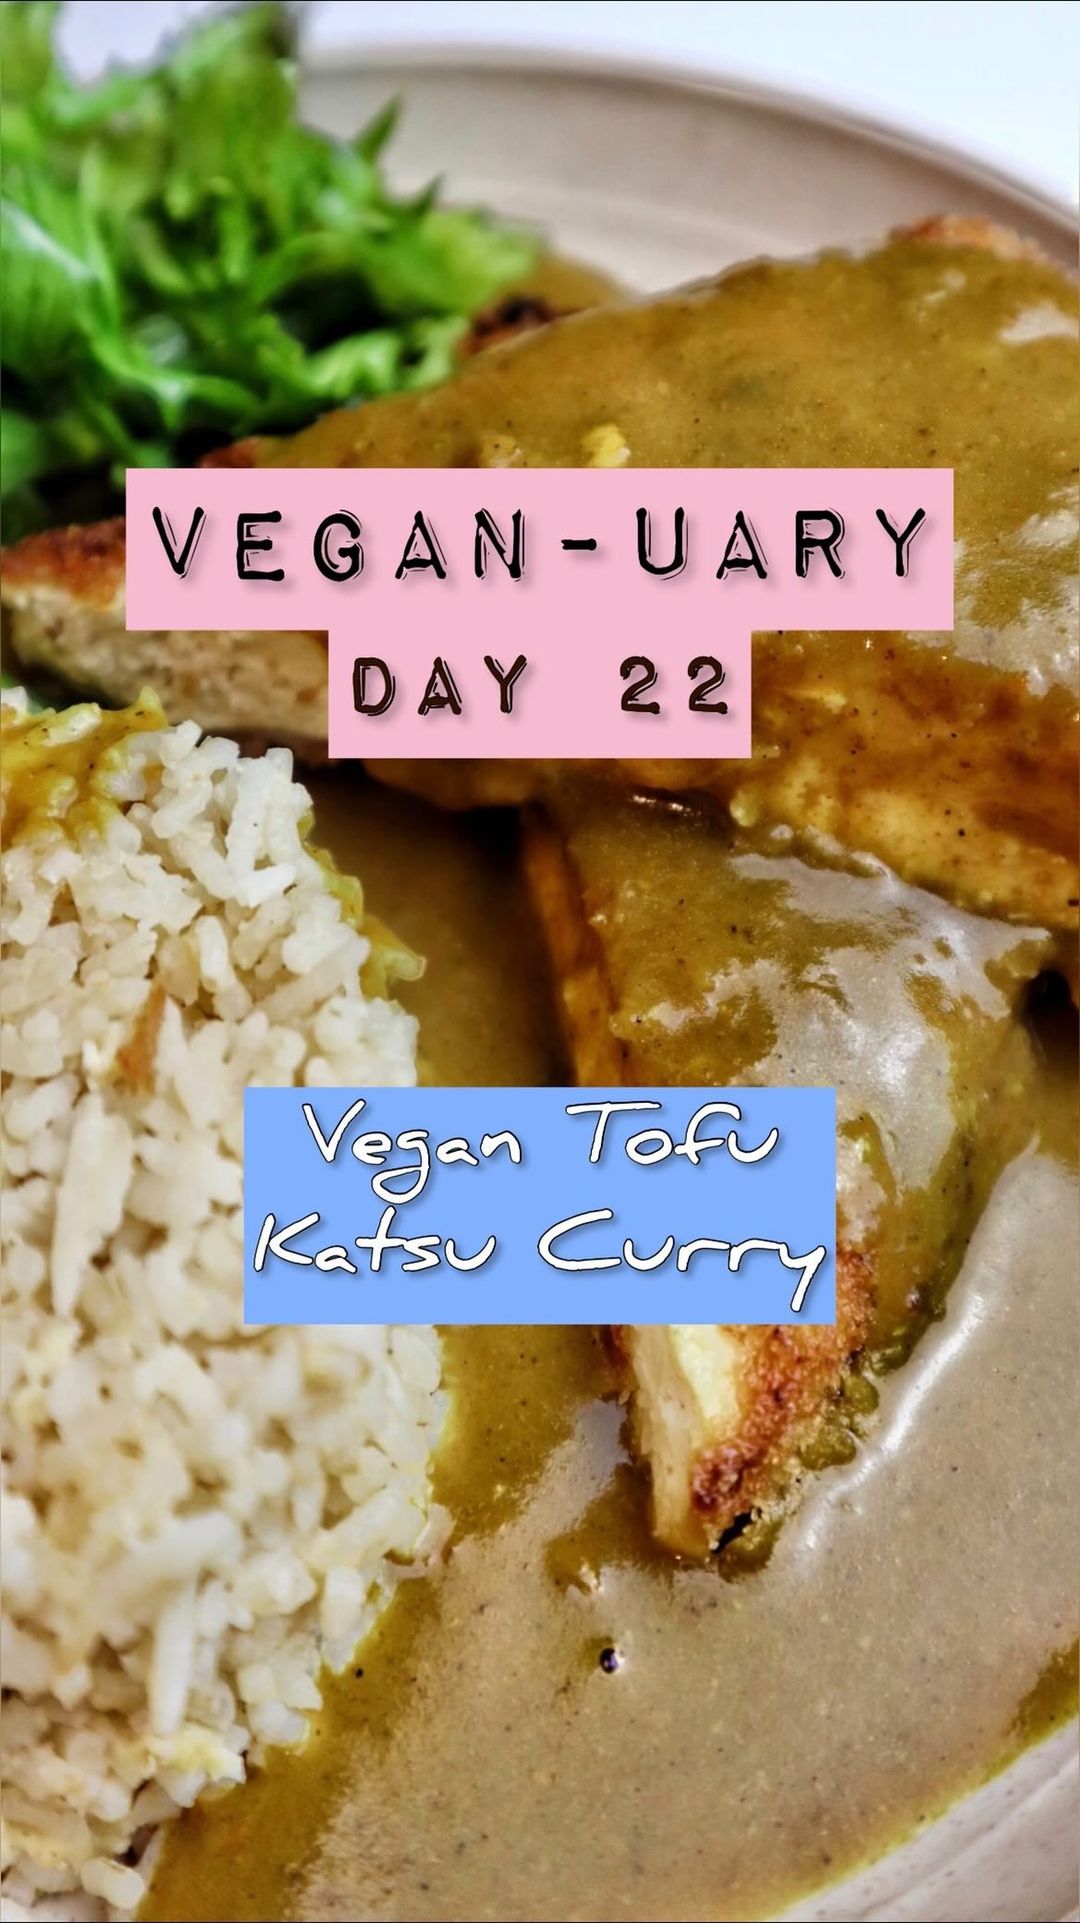 Vegan Katsu Curry from @whenmeateatsveg - ResepMamiku.com